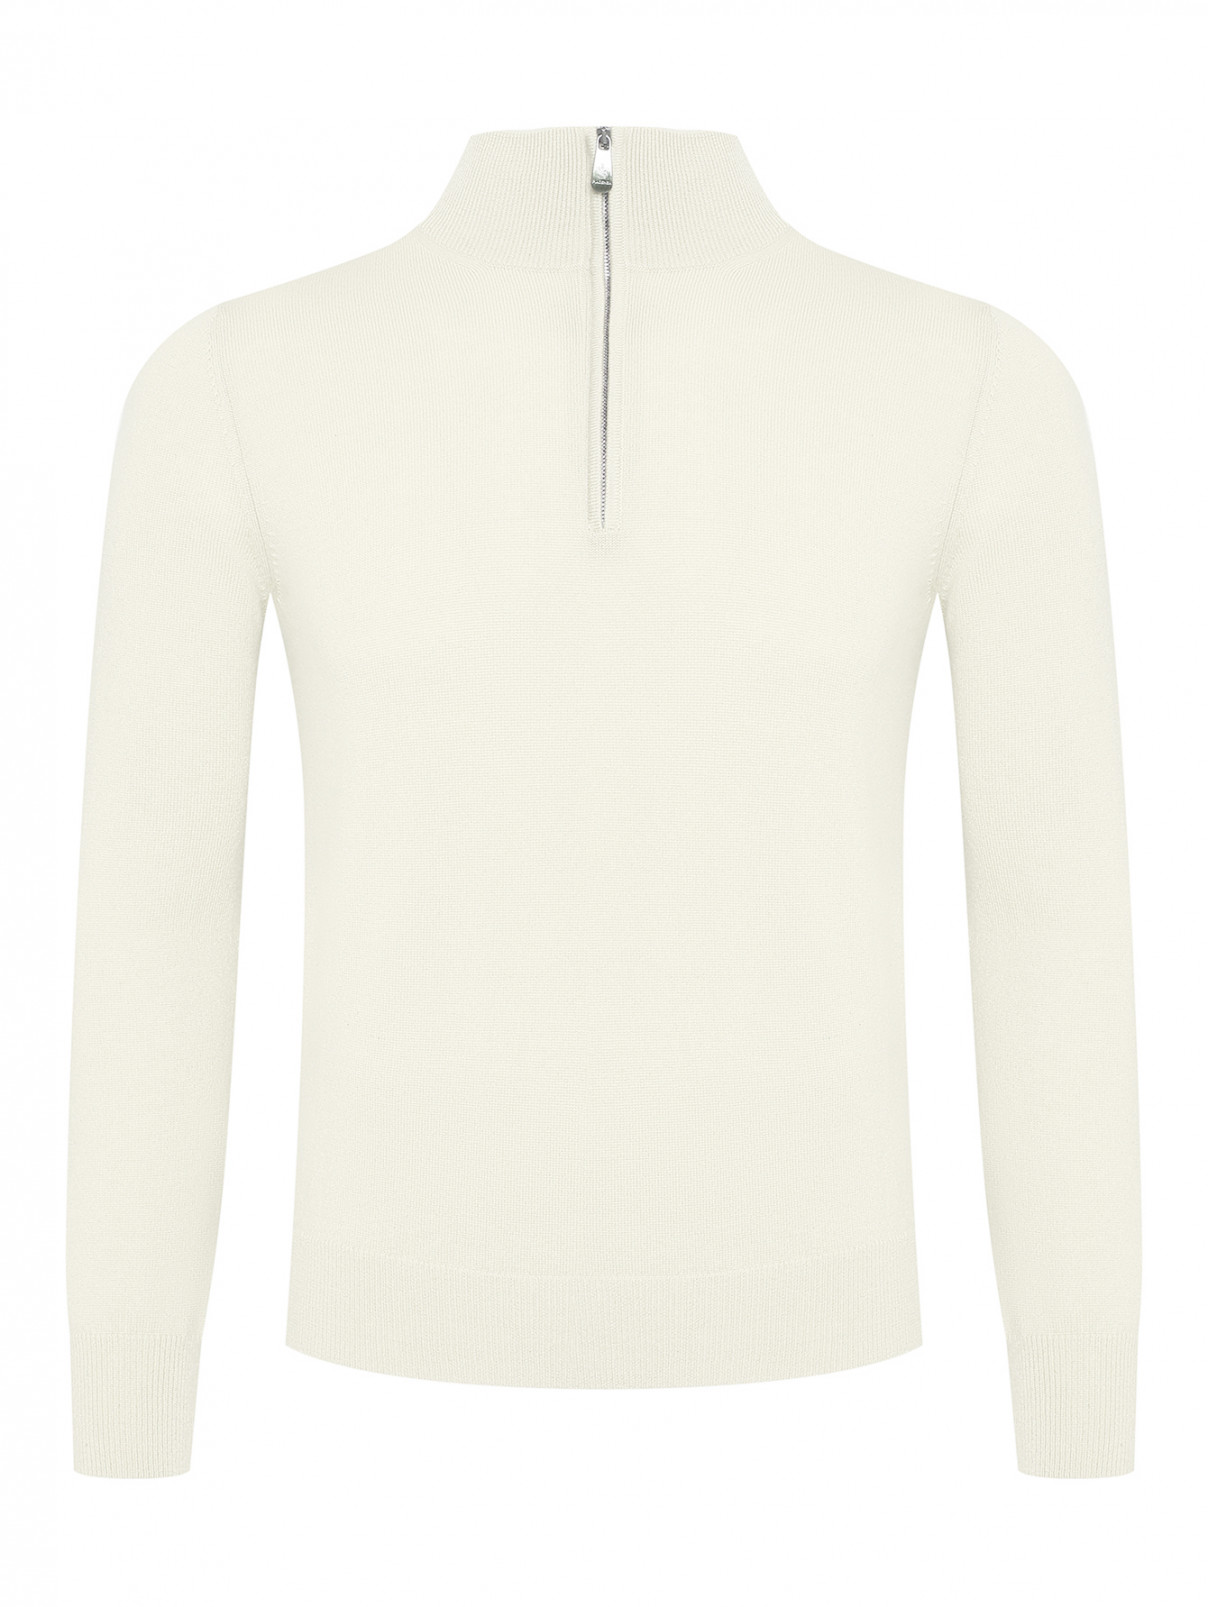 Джемпер из кашемира на молнии Piacenza Cashmere  –  Общий вид  – Цвет:  Белый